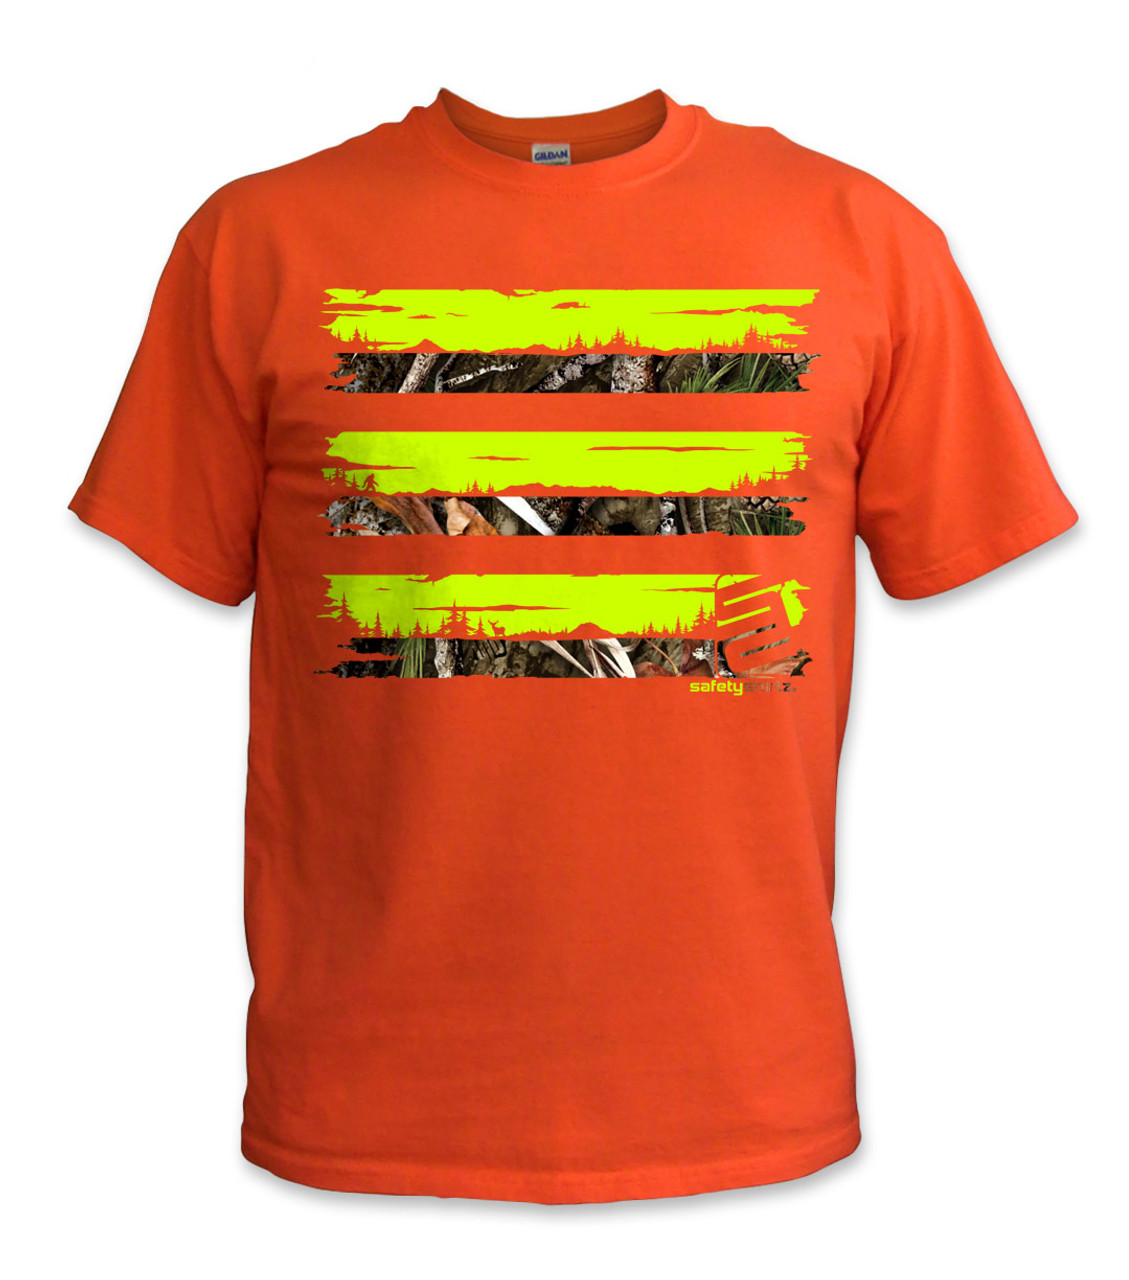 PNW Camo Safety Shirt - Safetyshirtz - Yellow-Camo-Orange